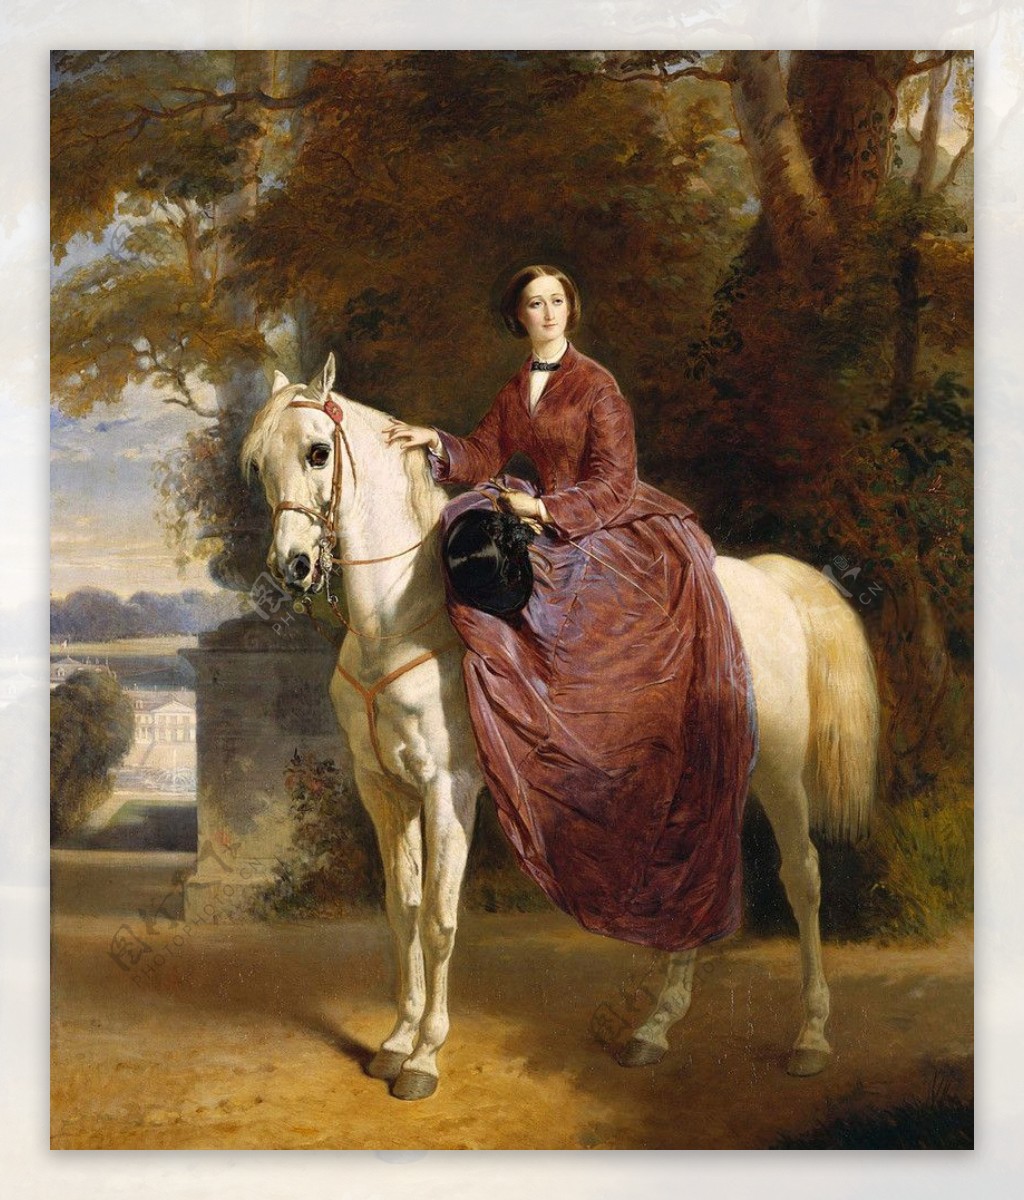 Eugenie皇后在马背上图片